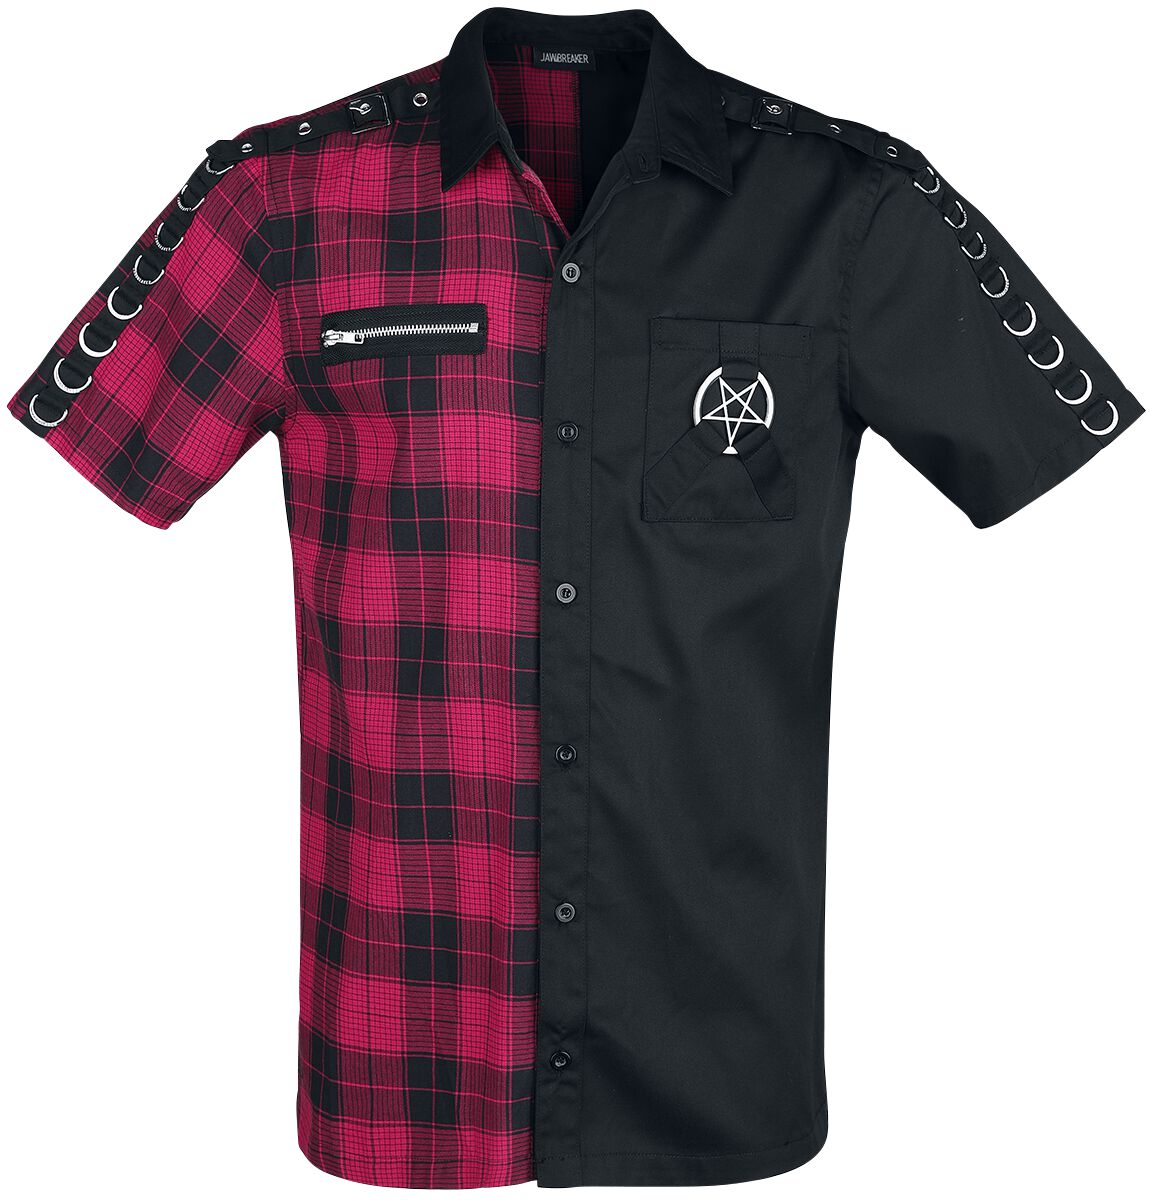 Jawbreaker - Gothic Kurzarmhemd - Split Shirt - S bis XXL - für Männer - Größe XL - schwarz/rot